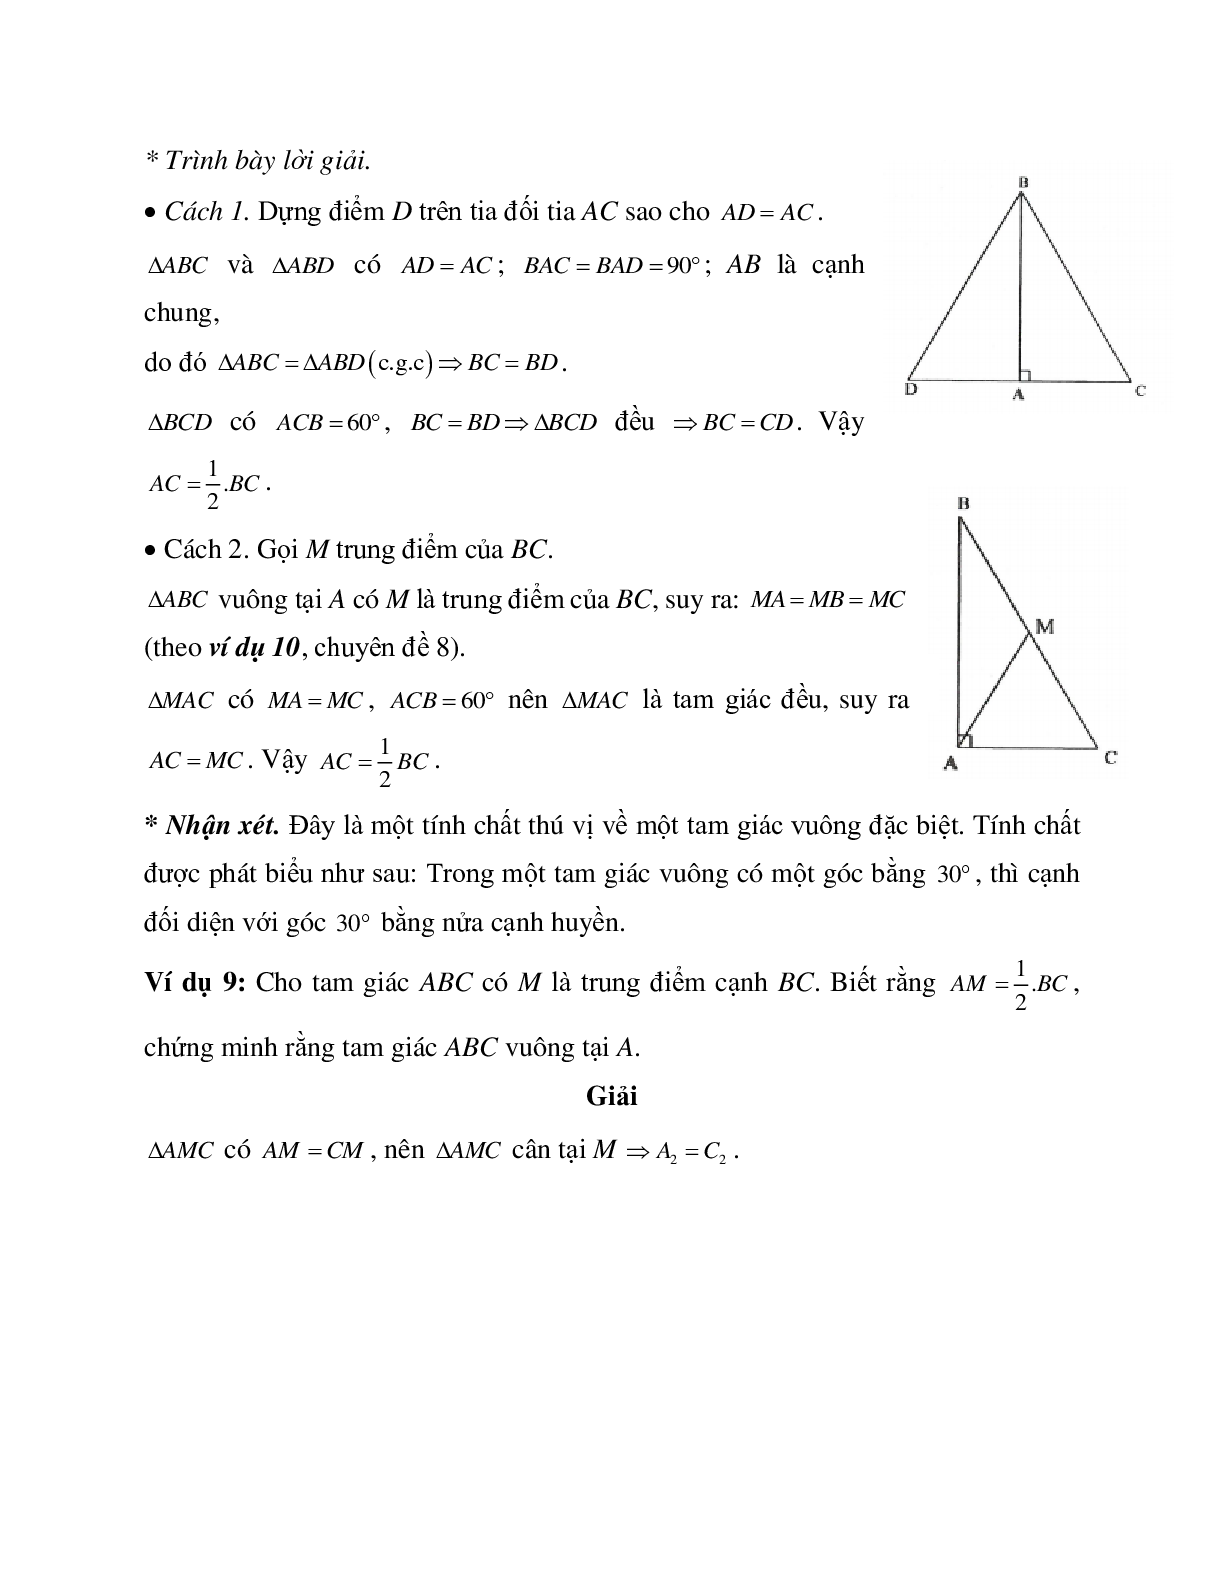 Phương pháp và bài tập về Tam giác cân - Tam giác đều có lời giải (trang 10)